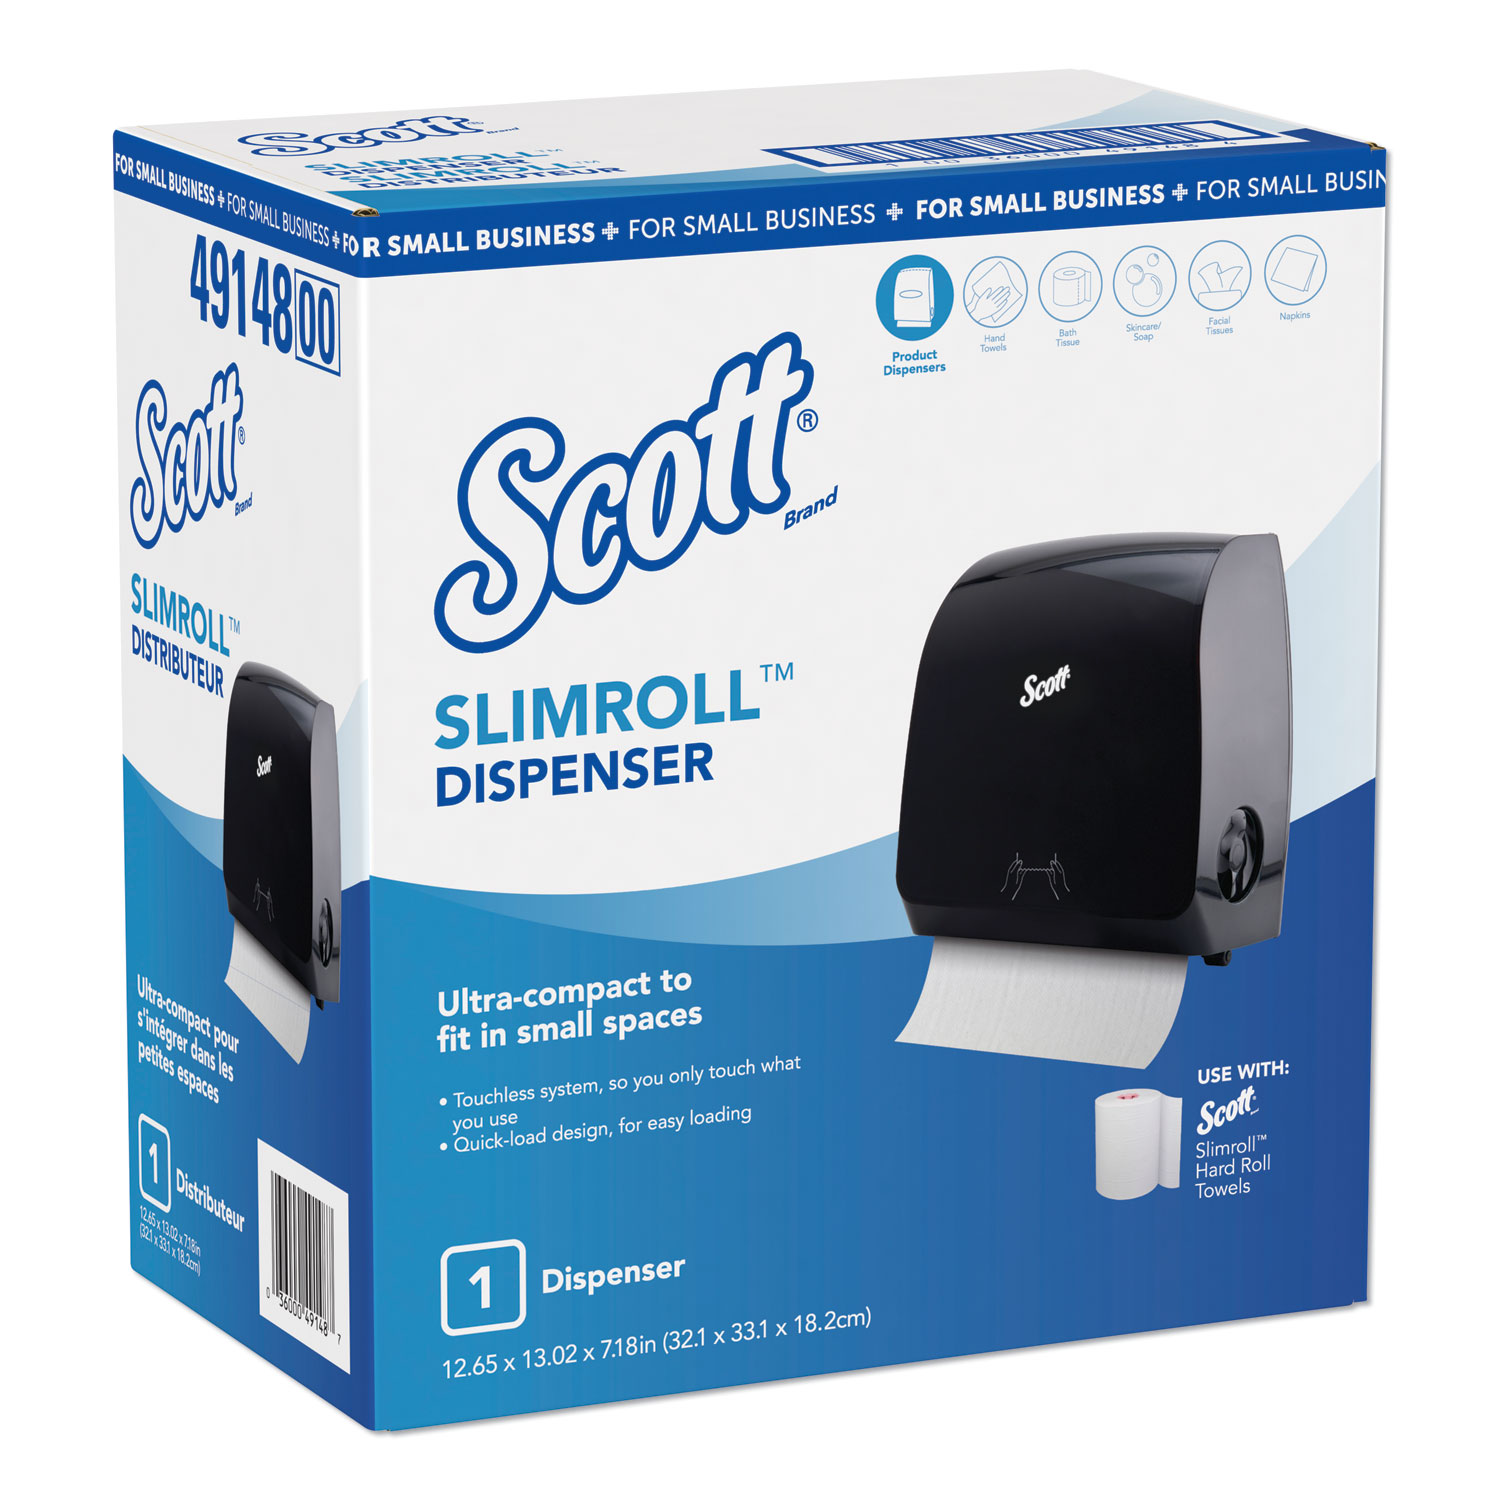  Scott 49148 Control Slimroll Manual Towel Dispenser, 12.65 x 7.8 x 13.02, Black (KCC49148) 